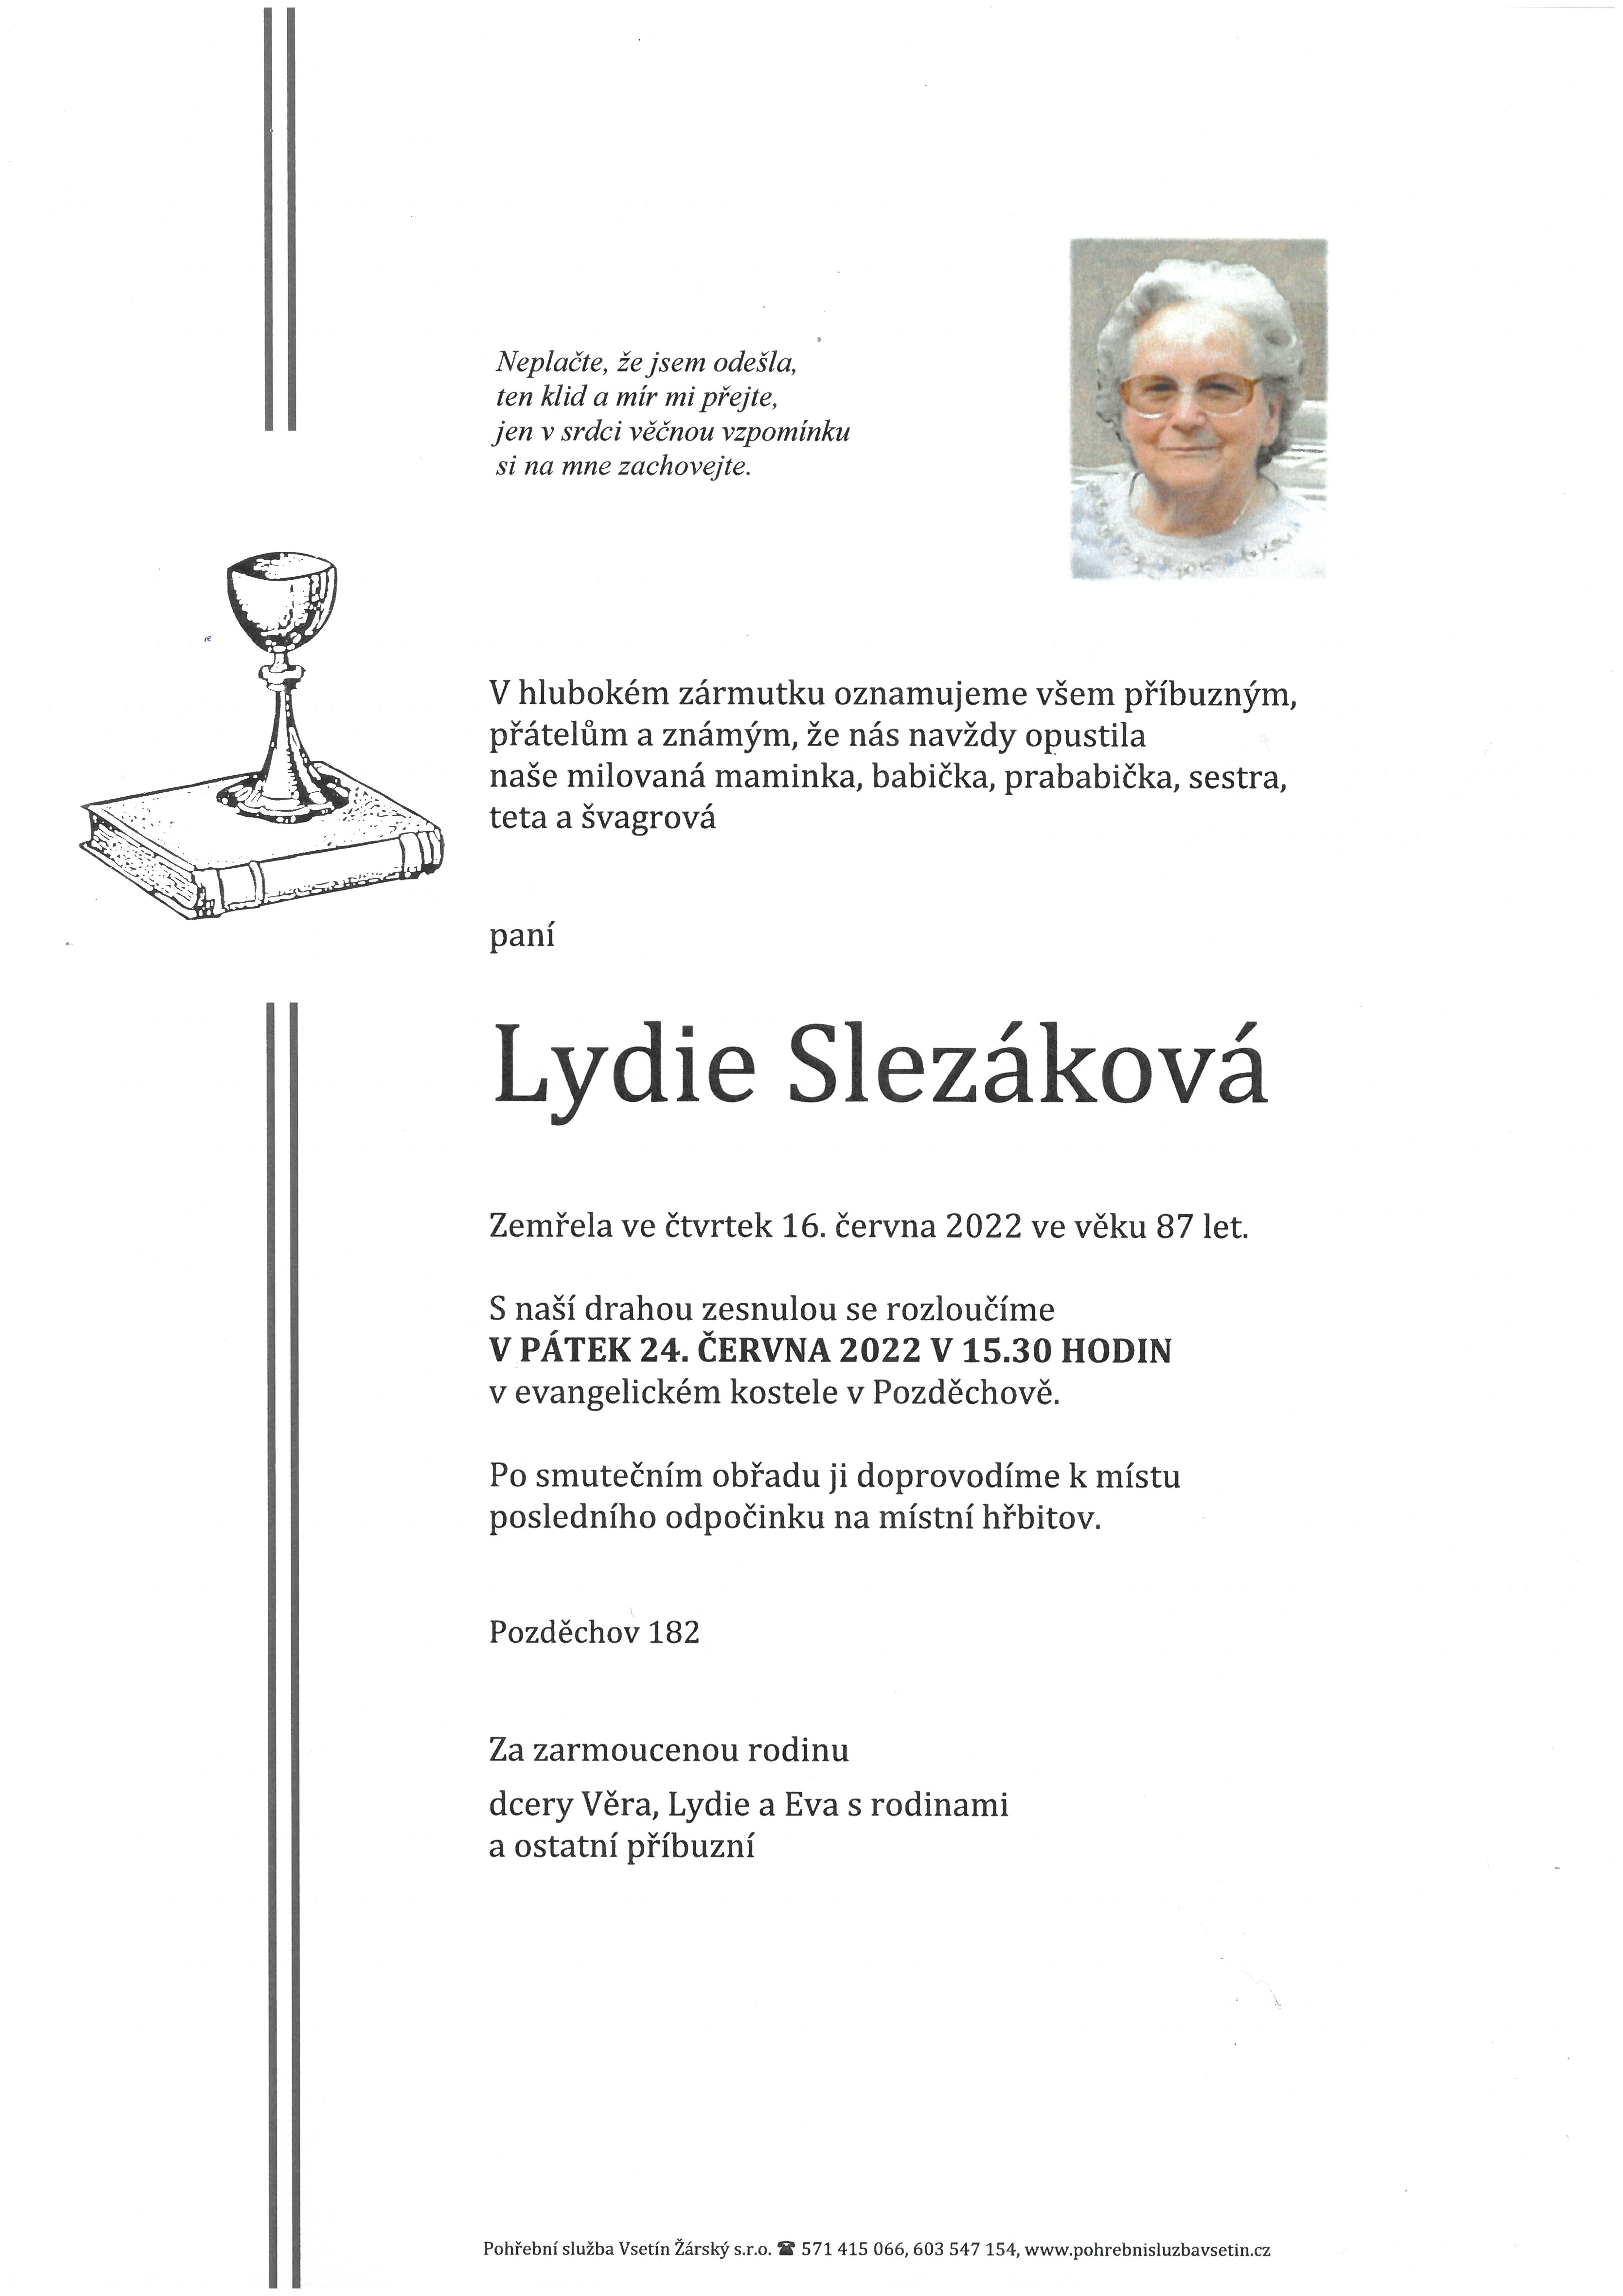 Lydie Slezáková